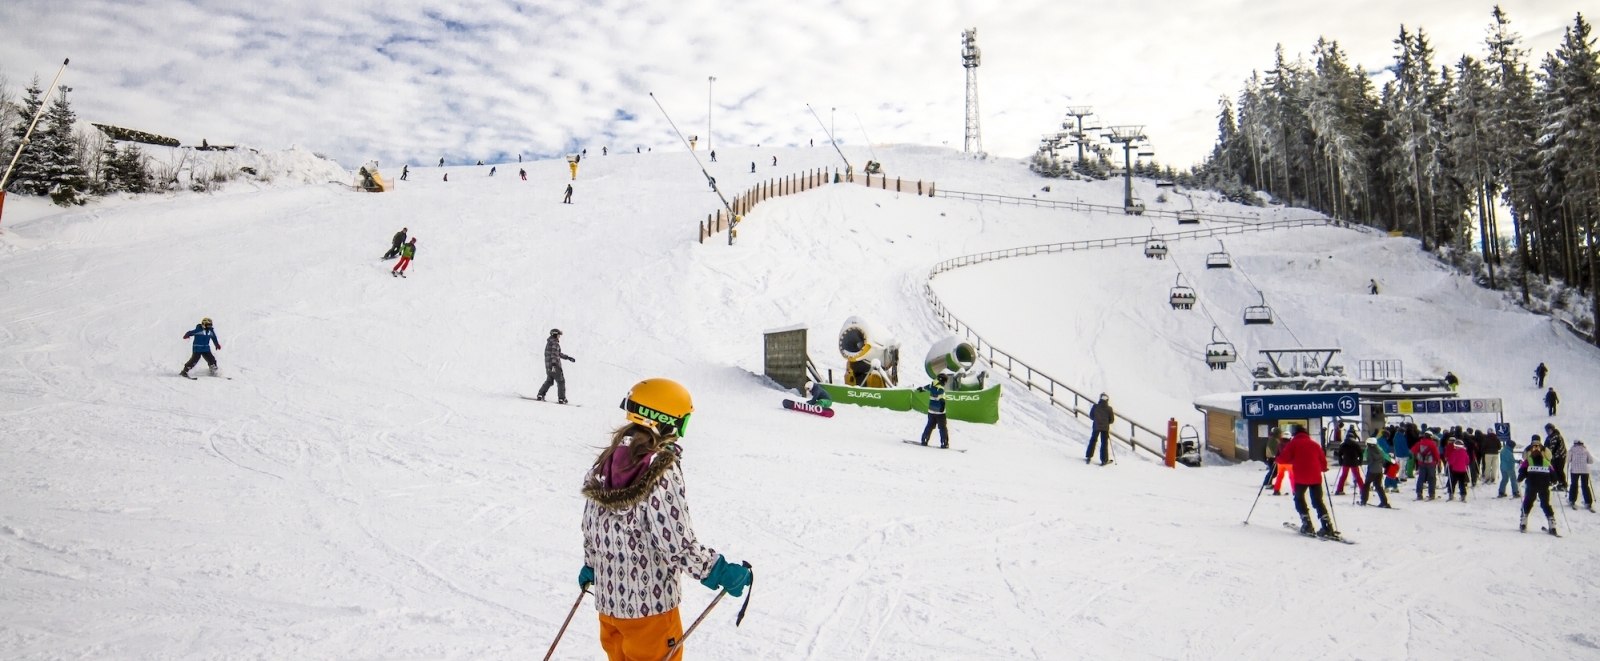 Auf dem Foto sieht man mehrere Skifahrer auf einer schneebedeckten Piste. Rechts sieht man einen Lift und am Rand einen Tannenwald.